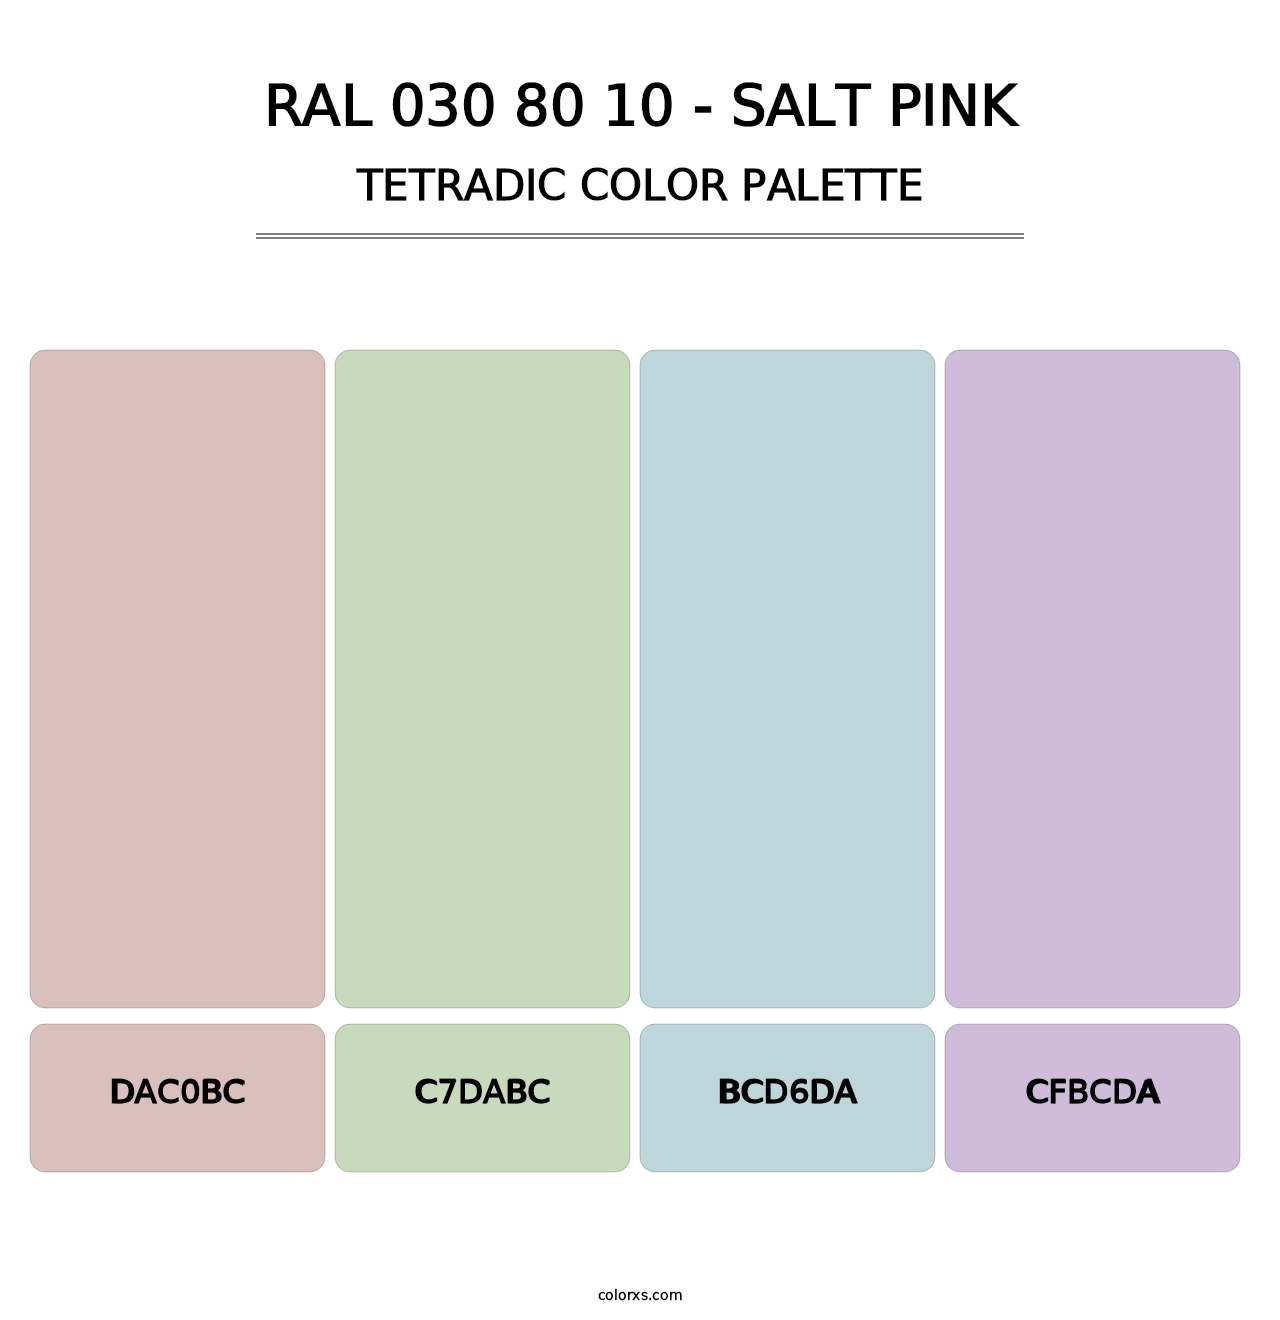 RAL 030 80 10 - Salt Pink - Tetradic Color Palette